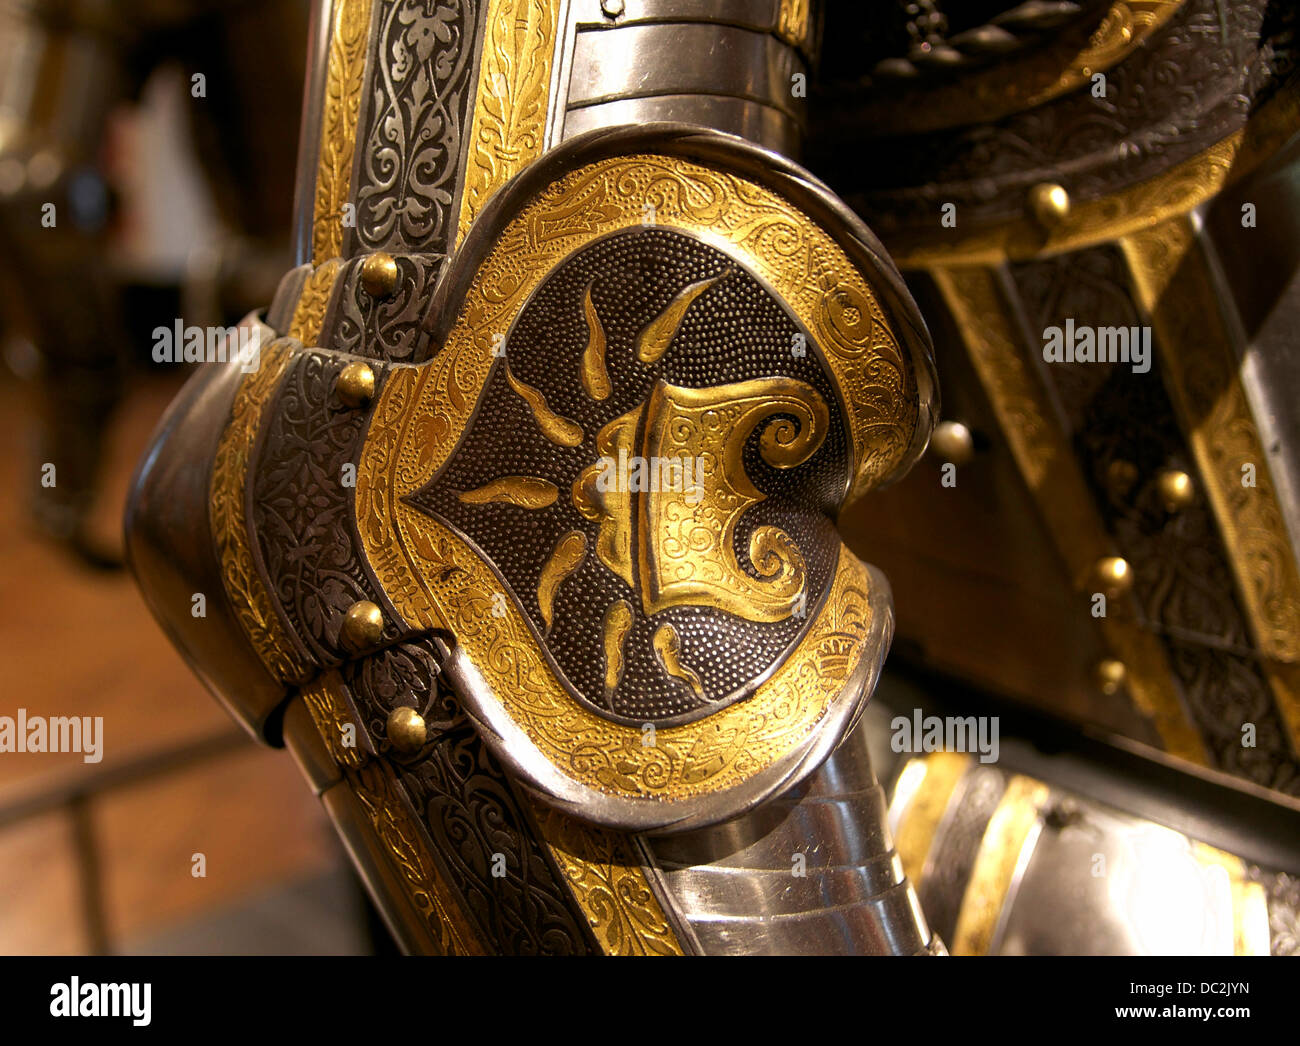 Couter di una corazza imperiale, decorato con il Firesteel, uno dei simboli della Casa degli Asburgo (vedere il Vello d'Oro Foto Stock